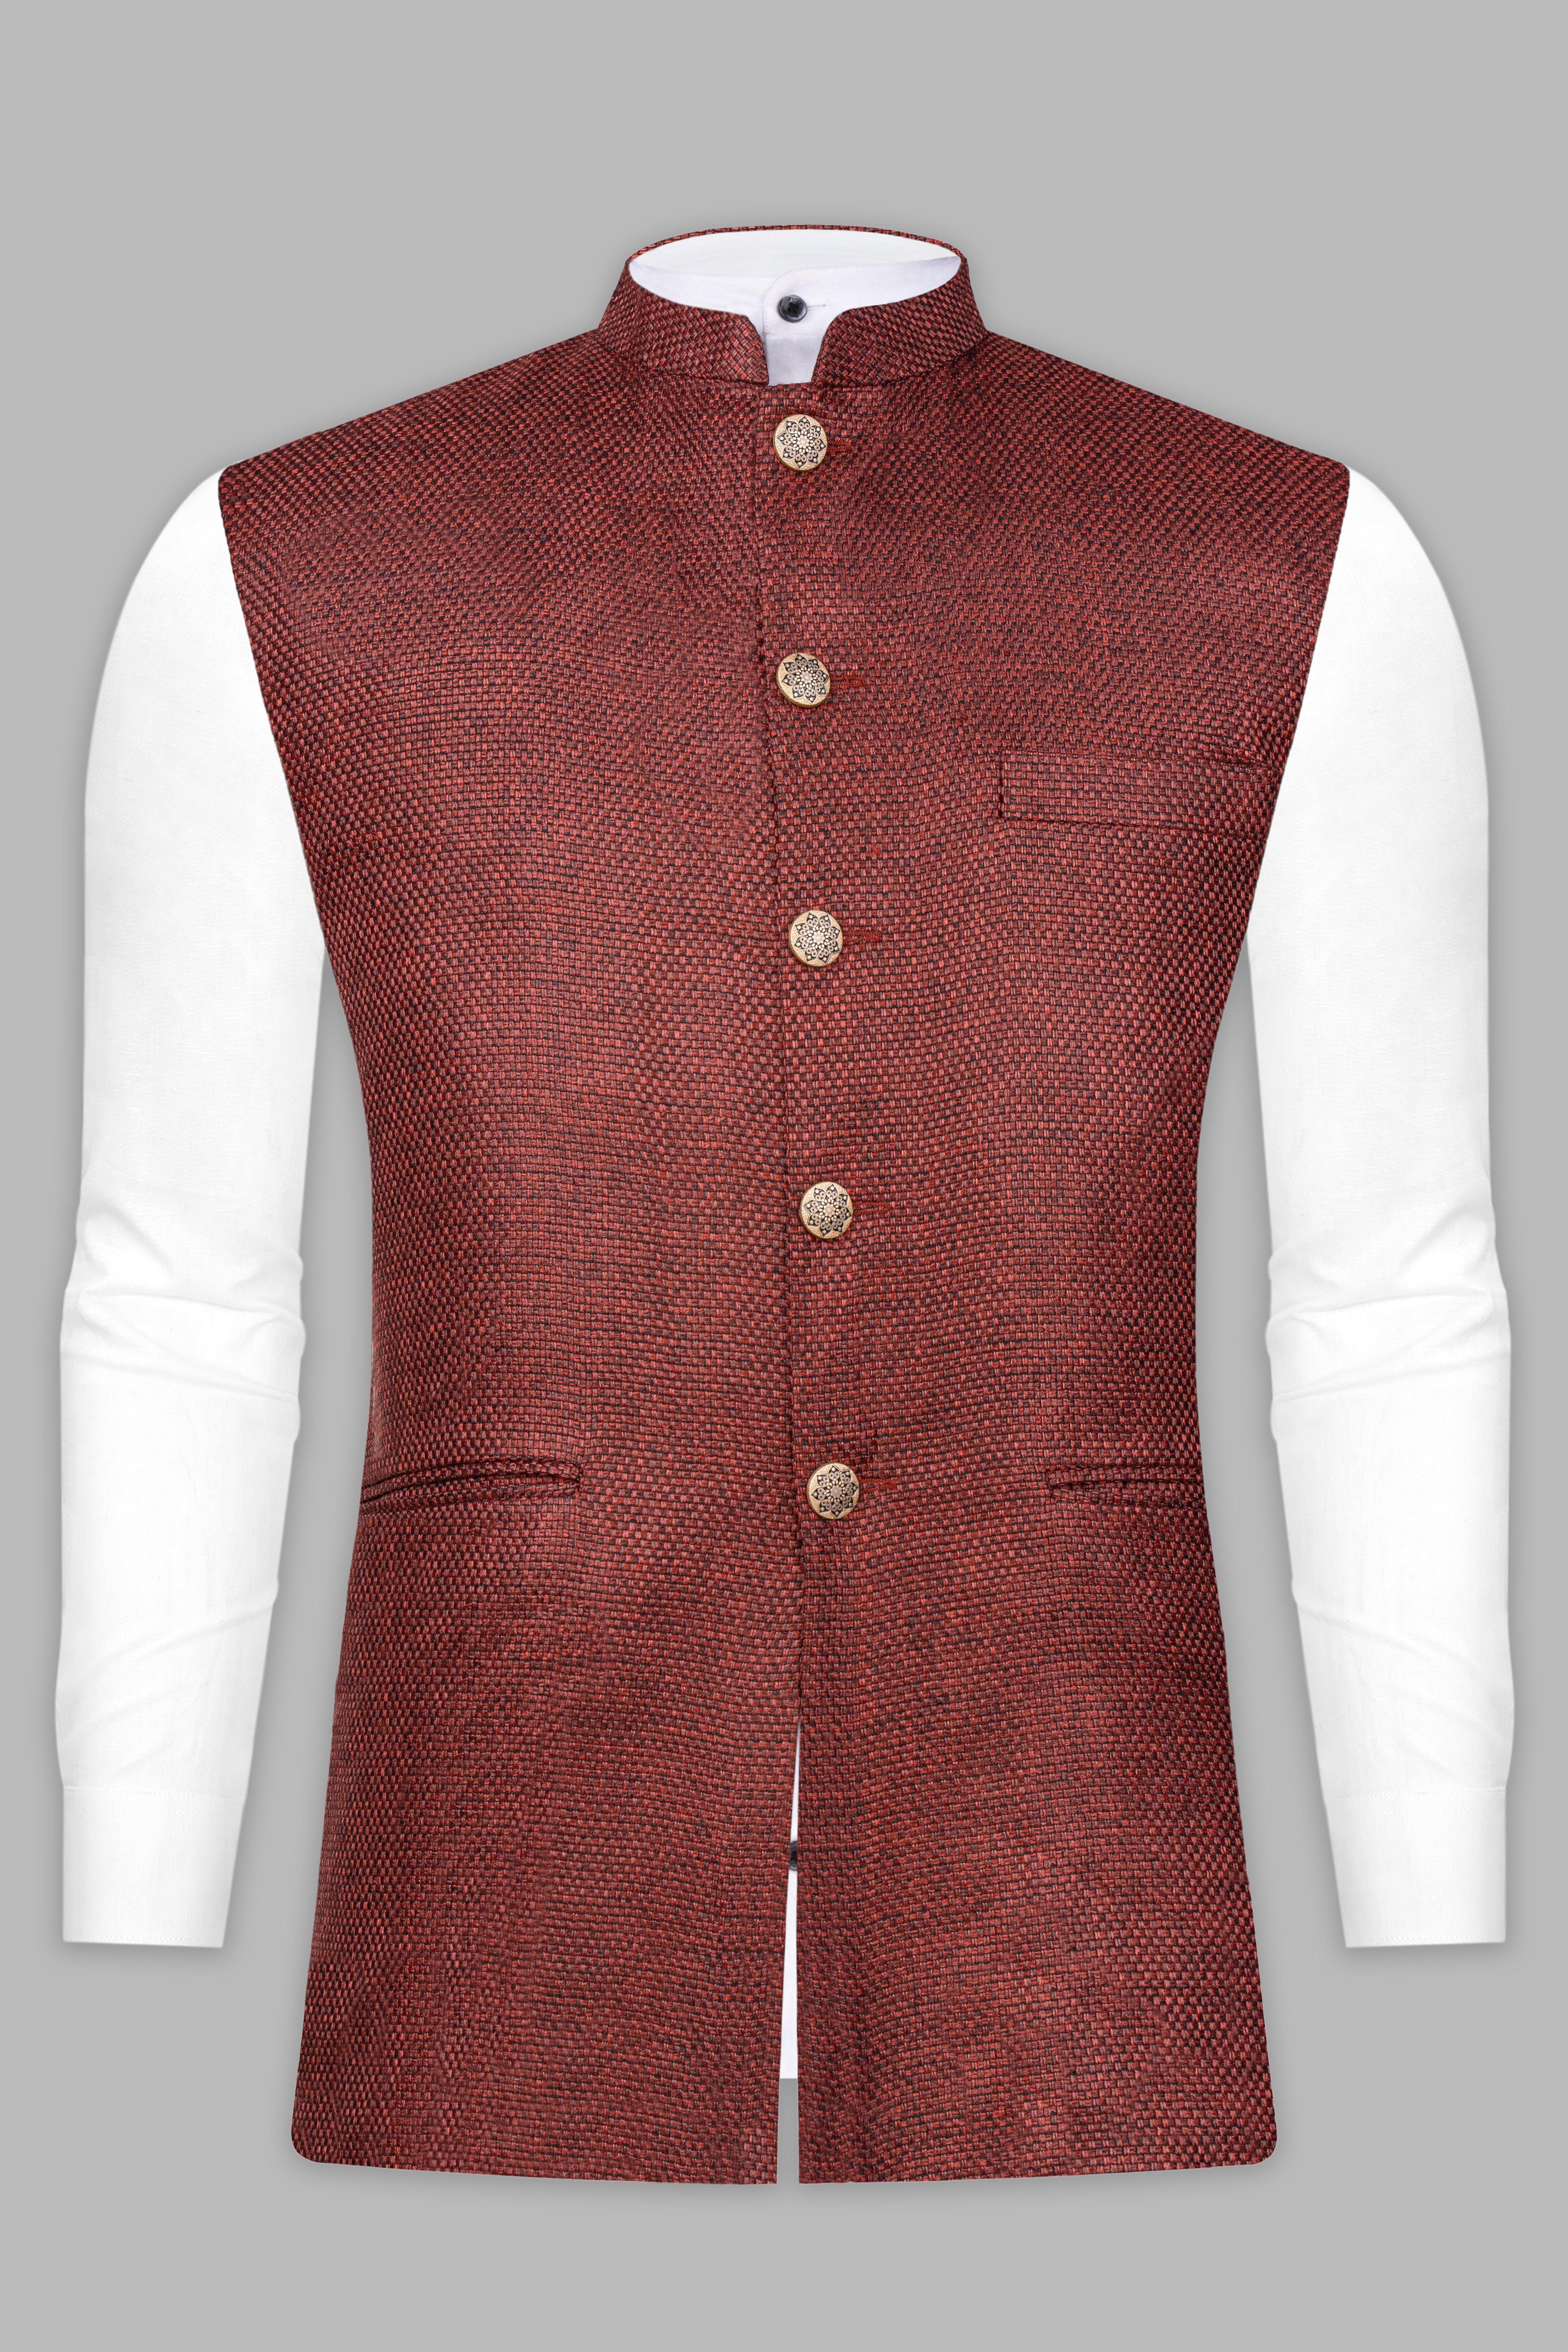 Merlot Red Textured Nehru Jacket